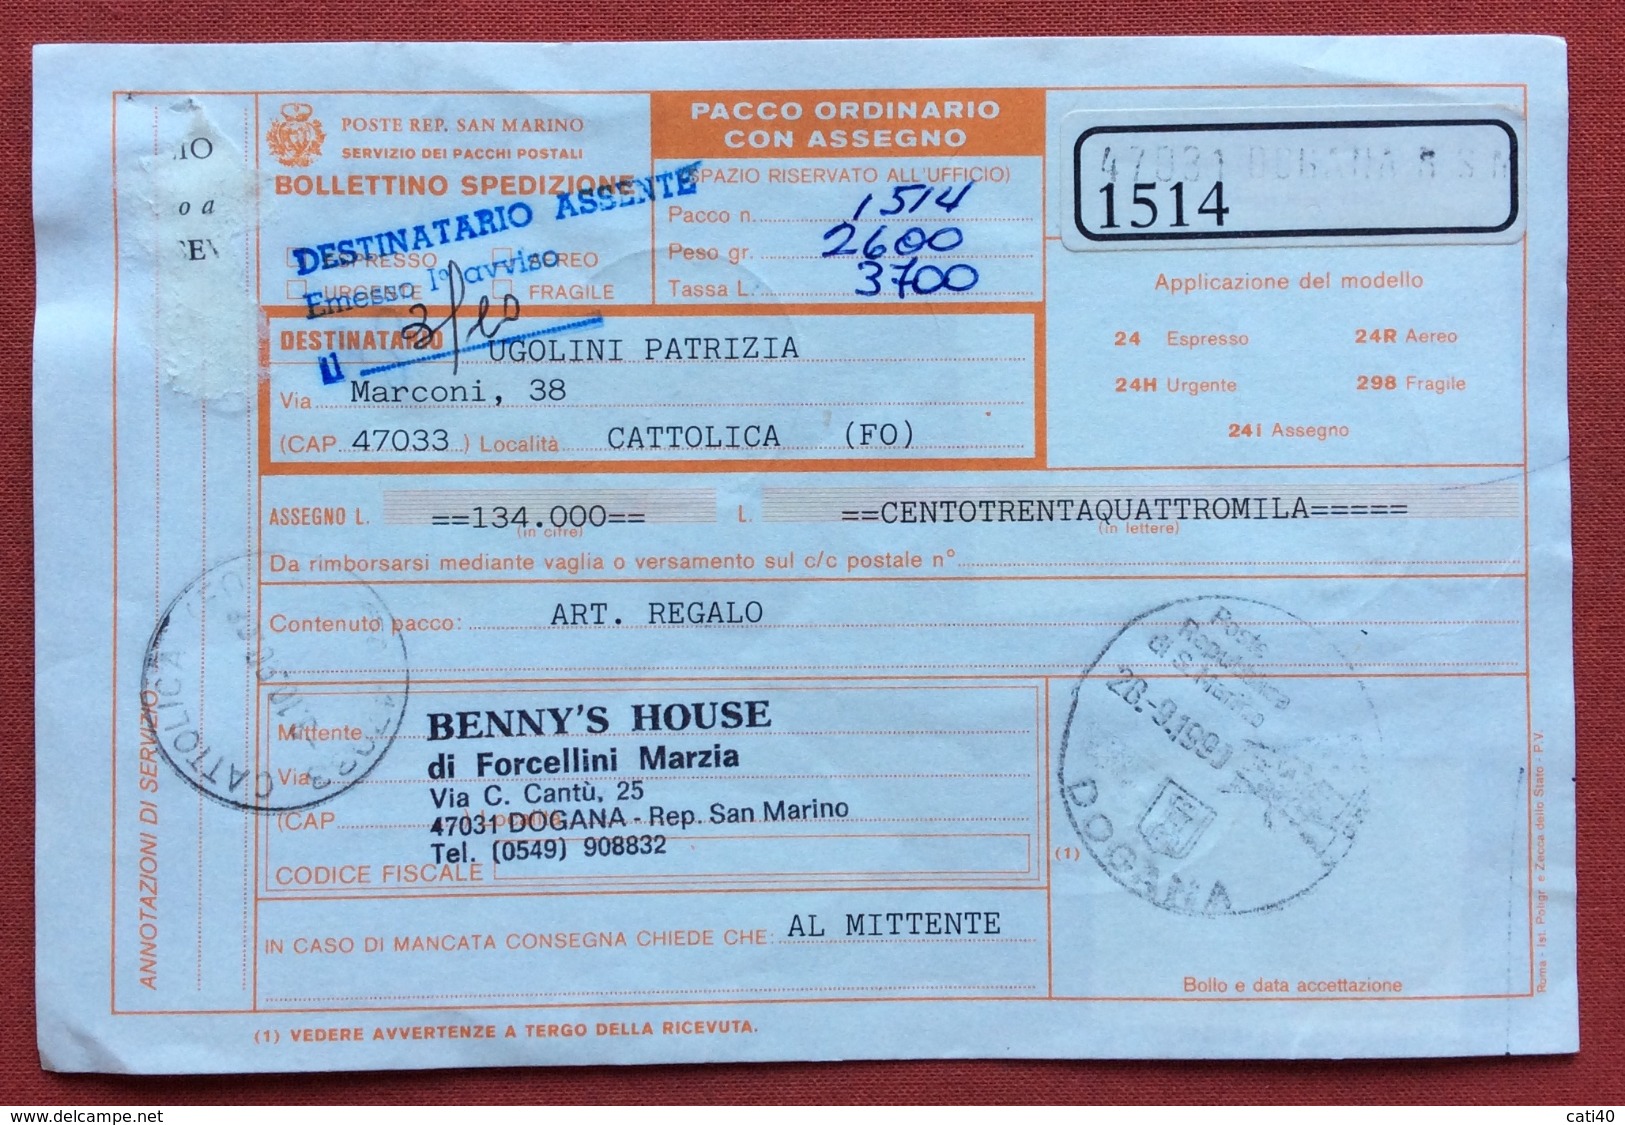 SAN MARINO BOLLETTINO PACCO ORDINARIO CON ASSEGNO  CON L.1500+1500+700  ANNULLO S.MARINO DOGANA 28/9/90 - Variétés Et Curiosités